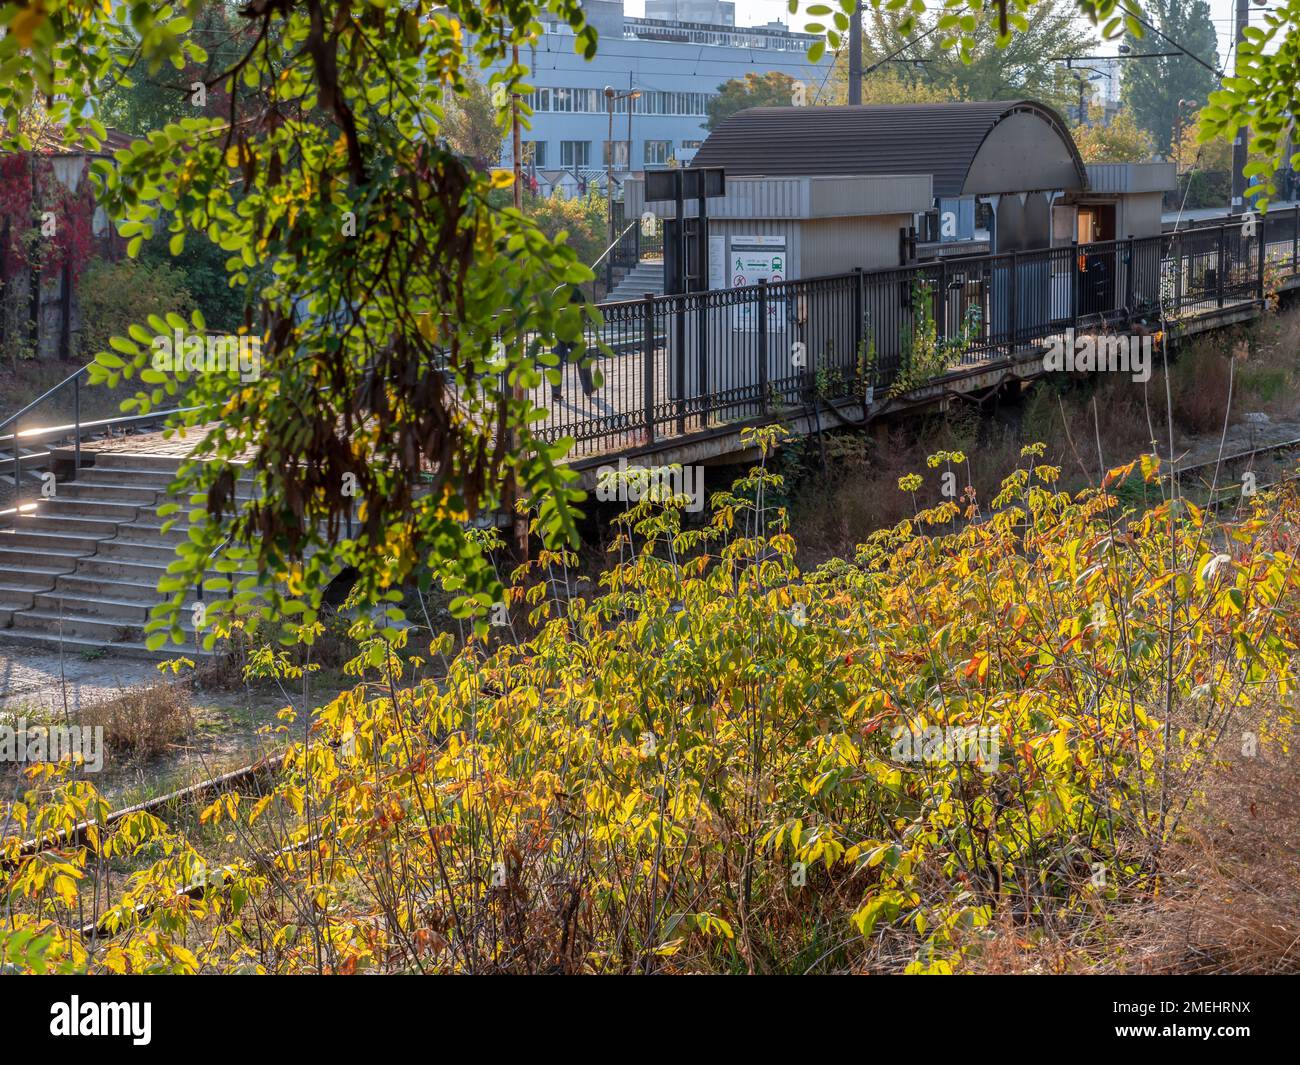 Stazione dei treni urbani suburbani con piattaforma in cemento e capannone in metallo. Autunno mattina colorata. Foto Stock